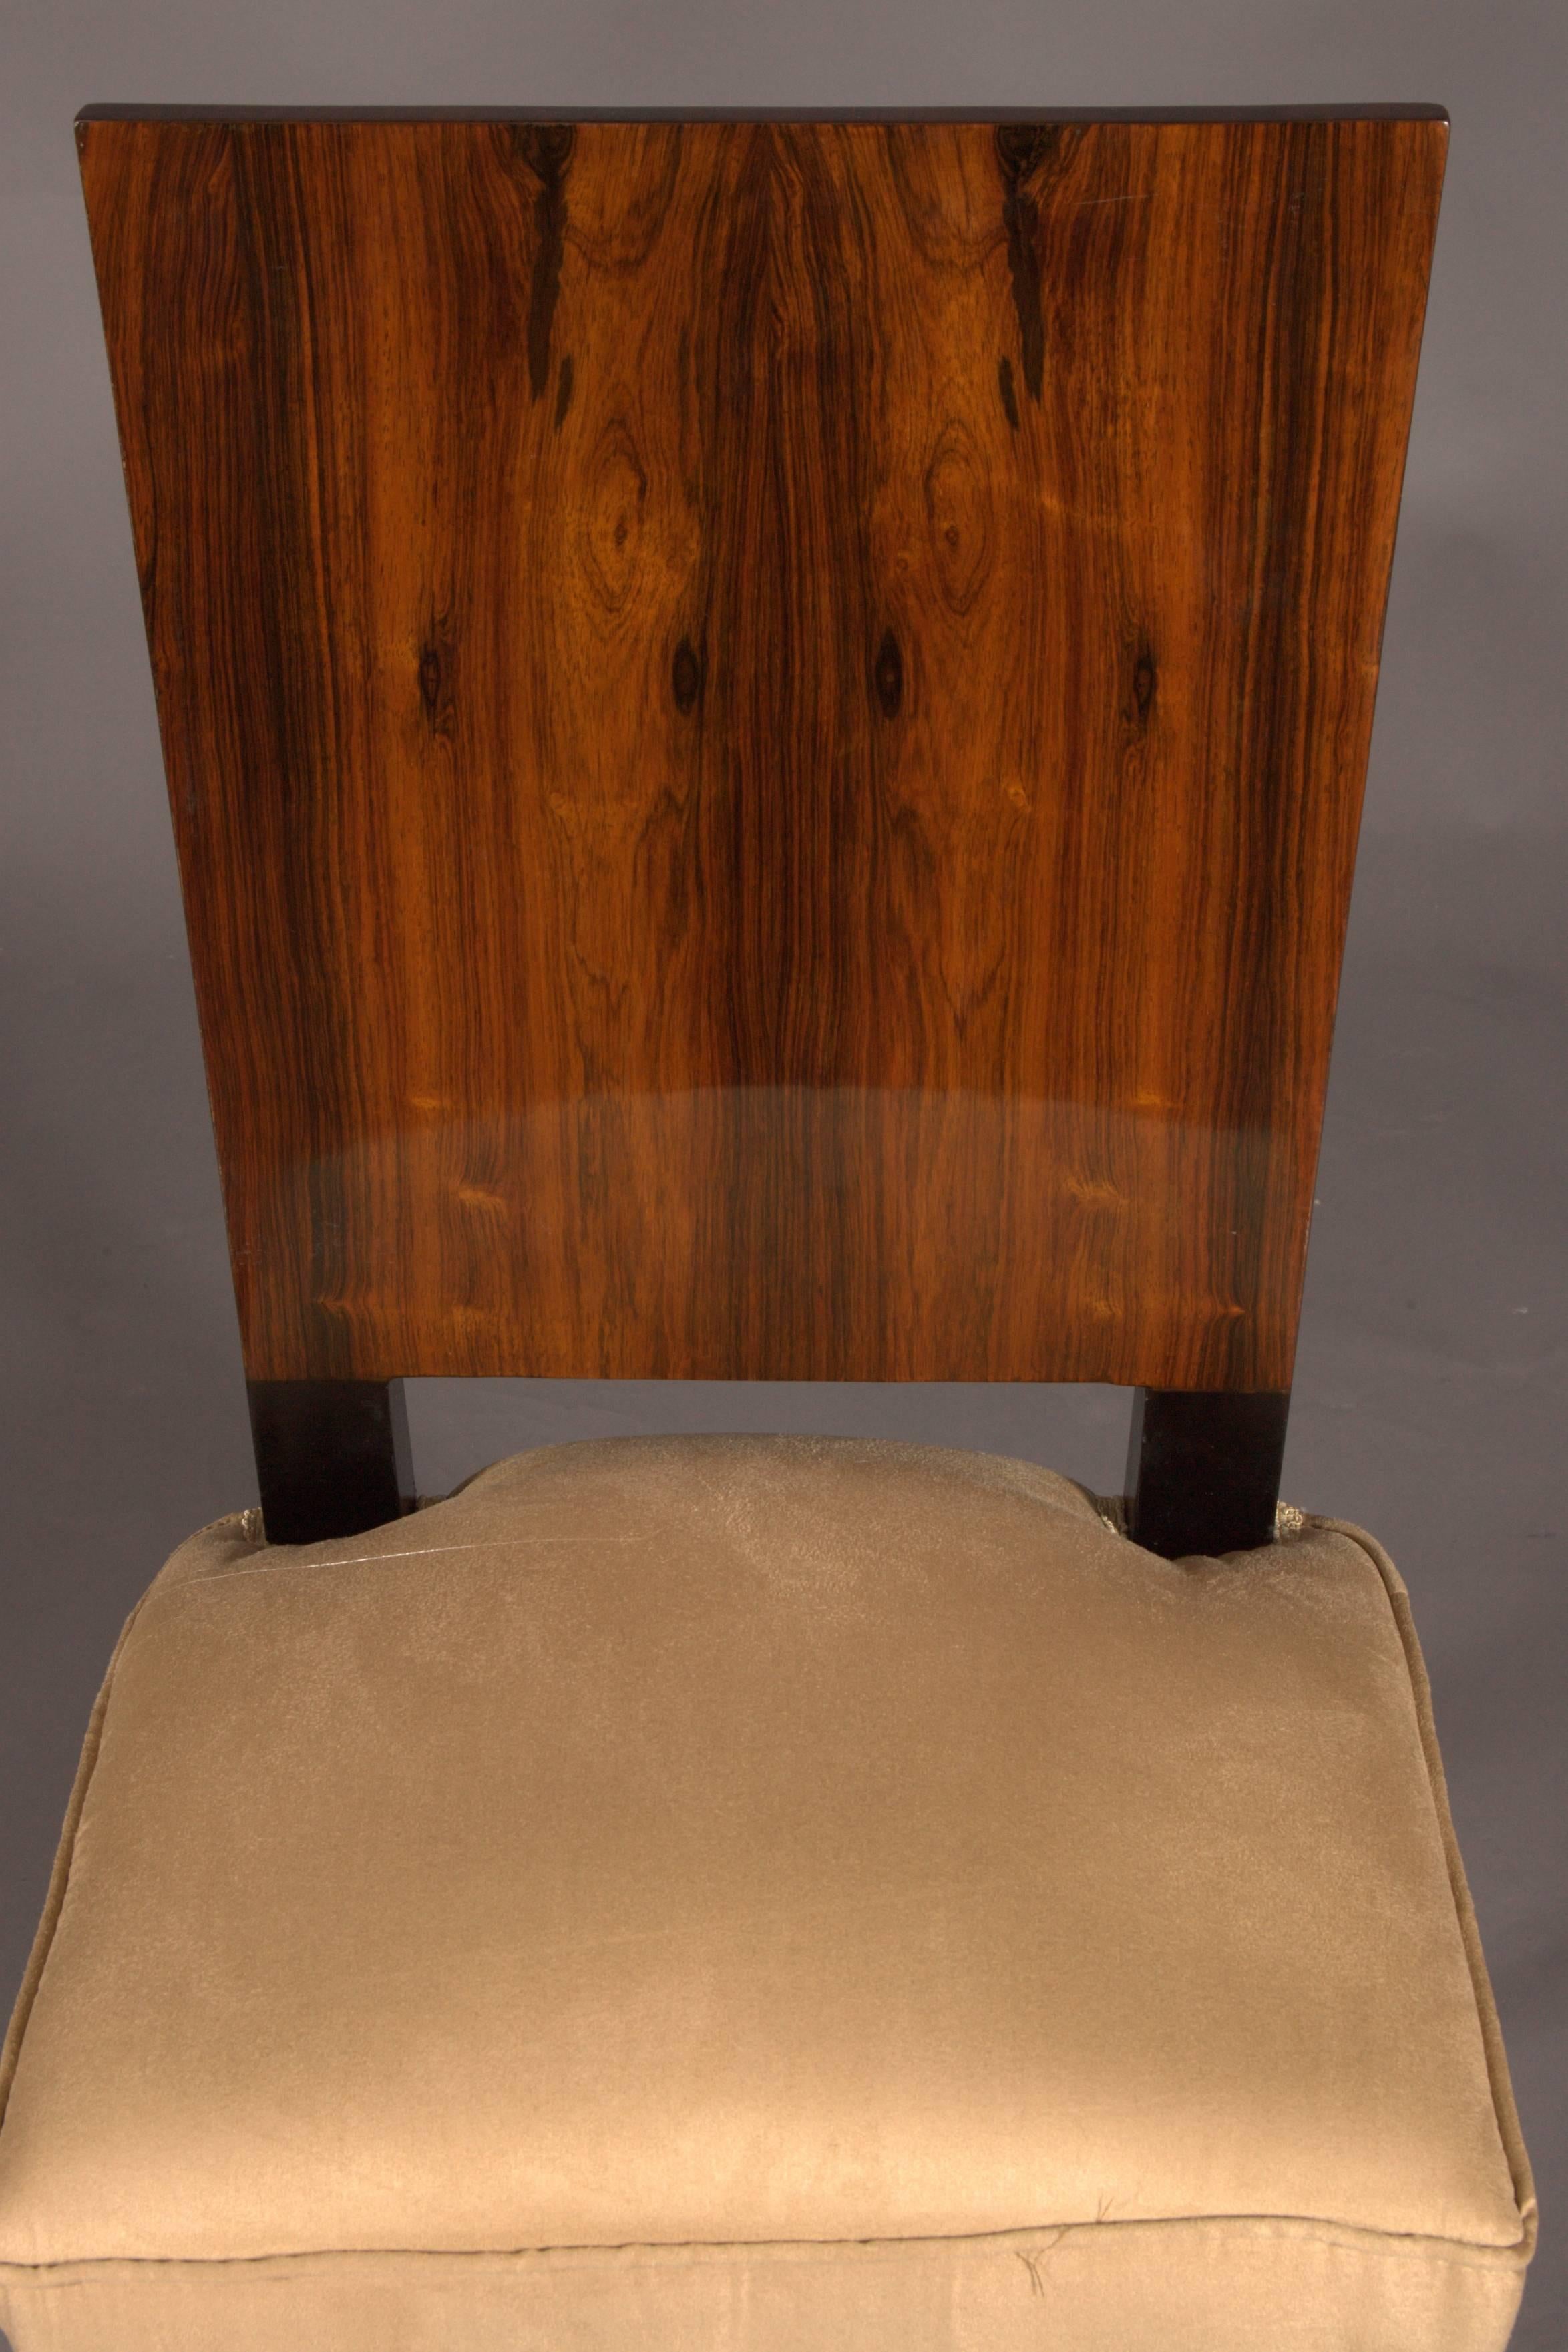 1 Elegant Chair in Art Deco Style, Rosewood Veneer 1